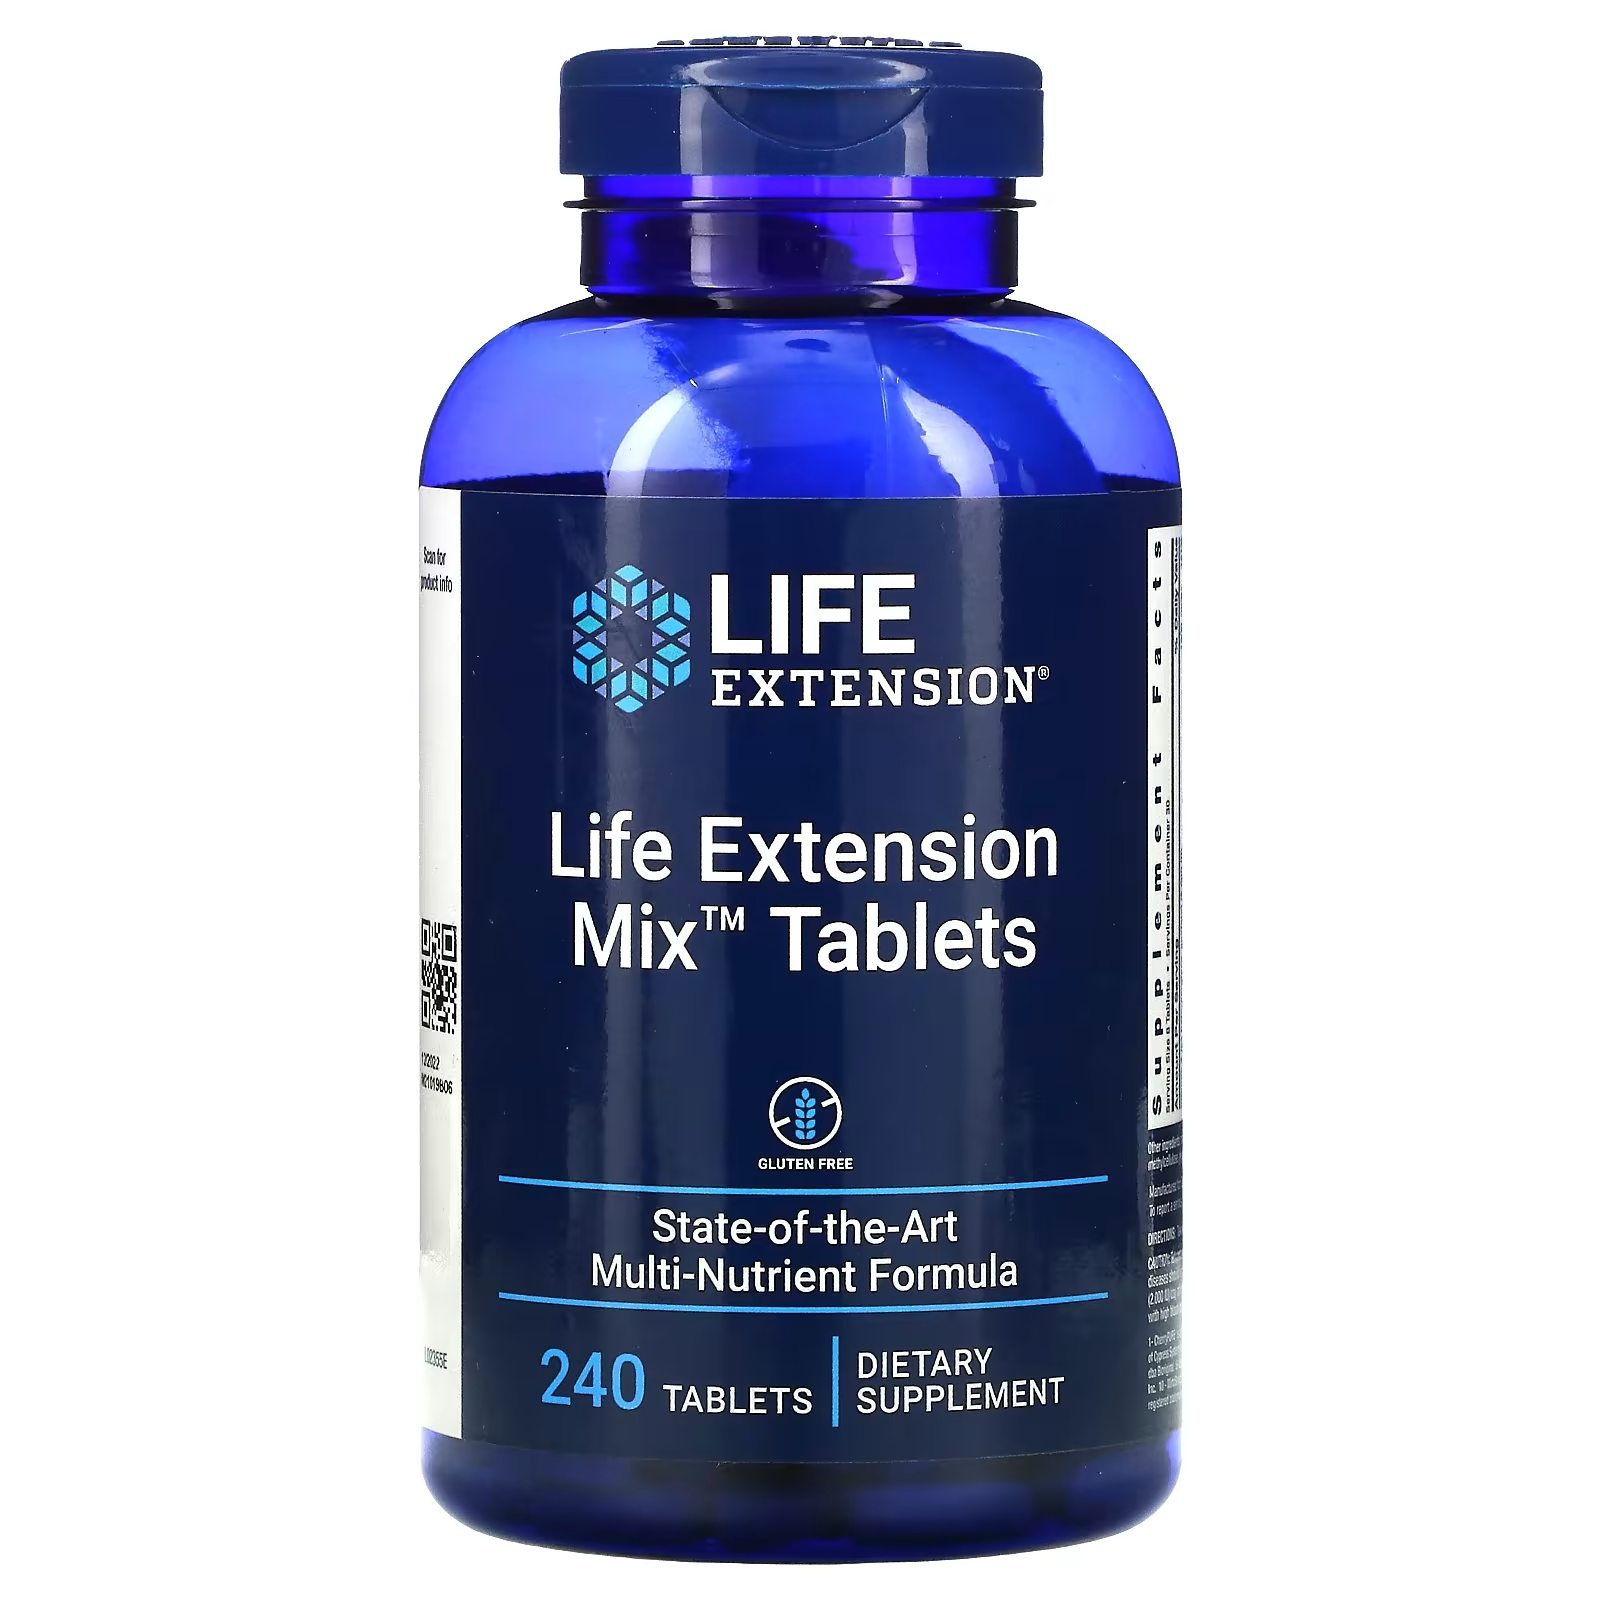 Пищевая Добавка Life Extension Mix Tablets, 240 таблеток пищевая добавка life extension mix tablets 240 таблеток